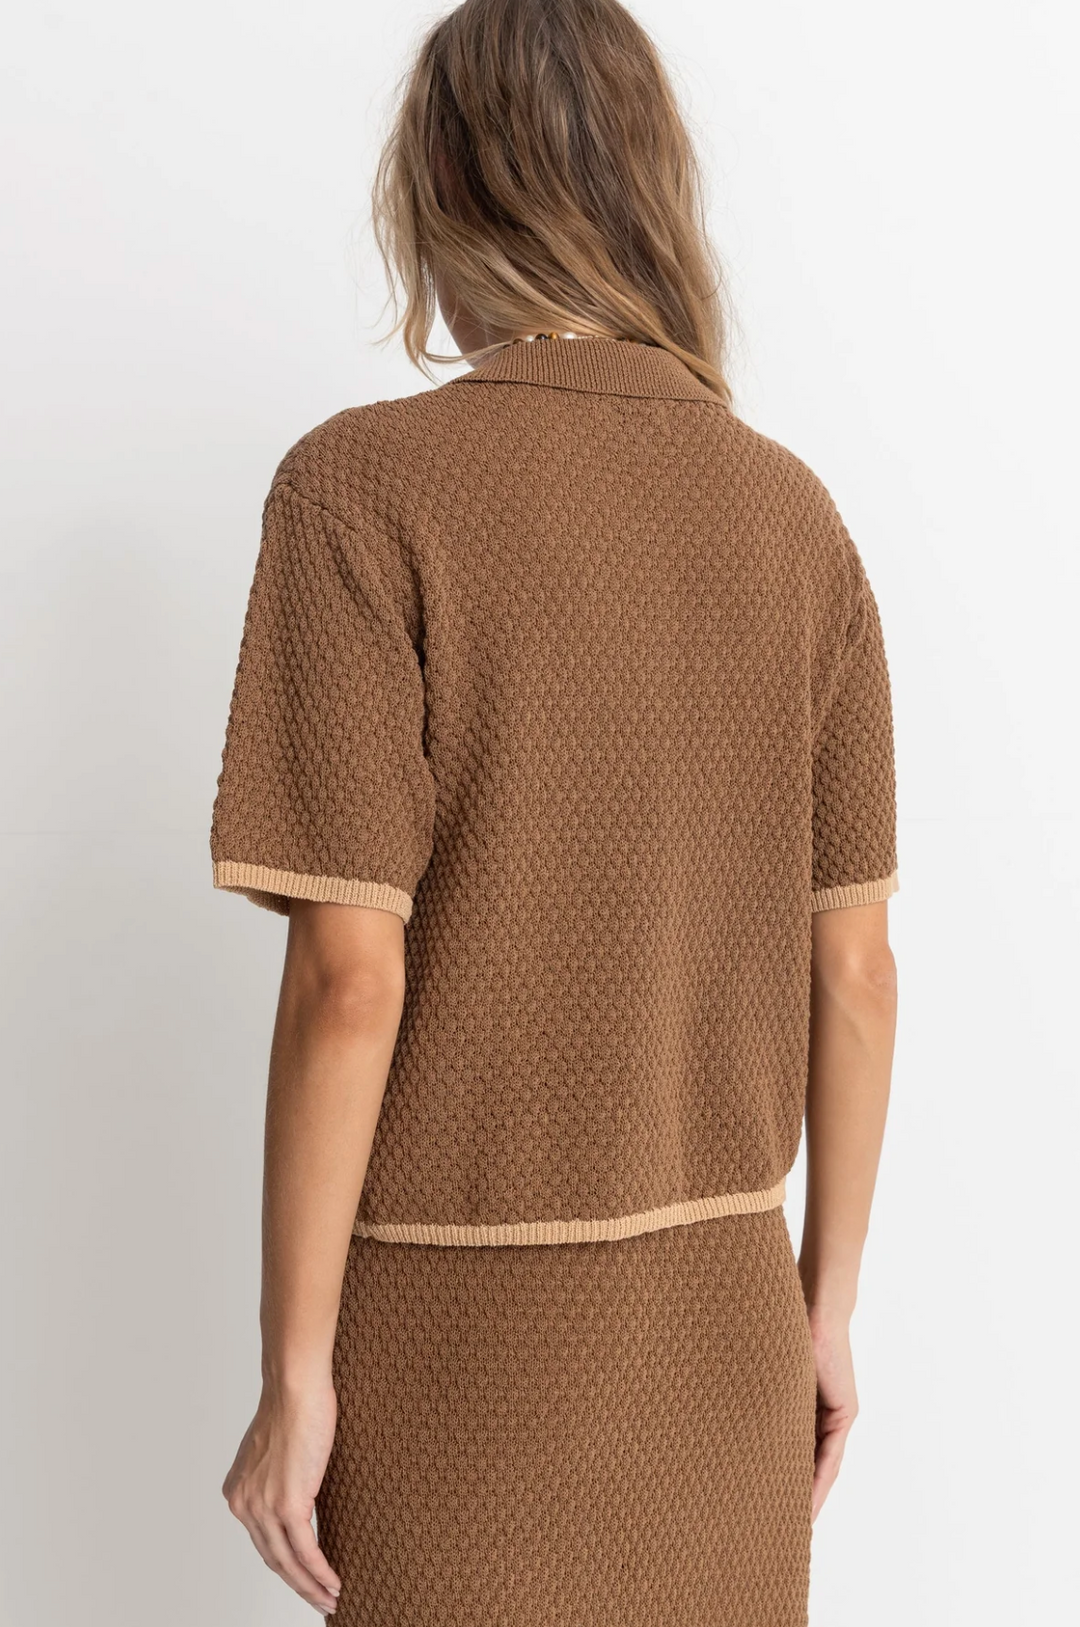 Joni Knit Shirt - Chocolate